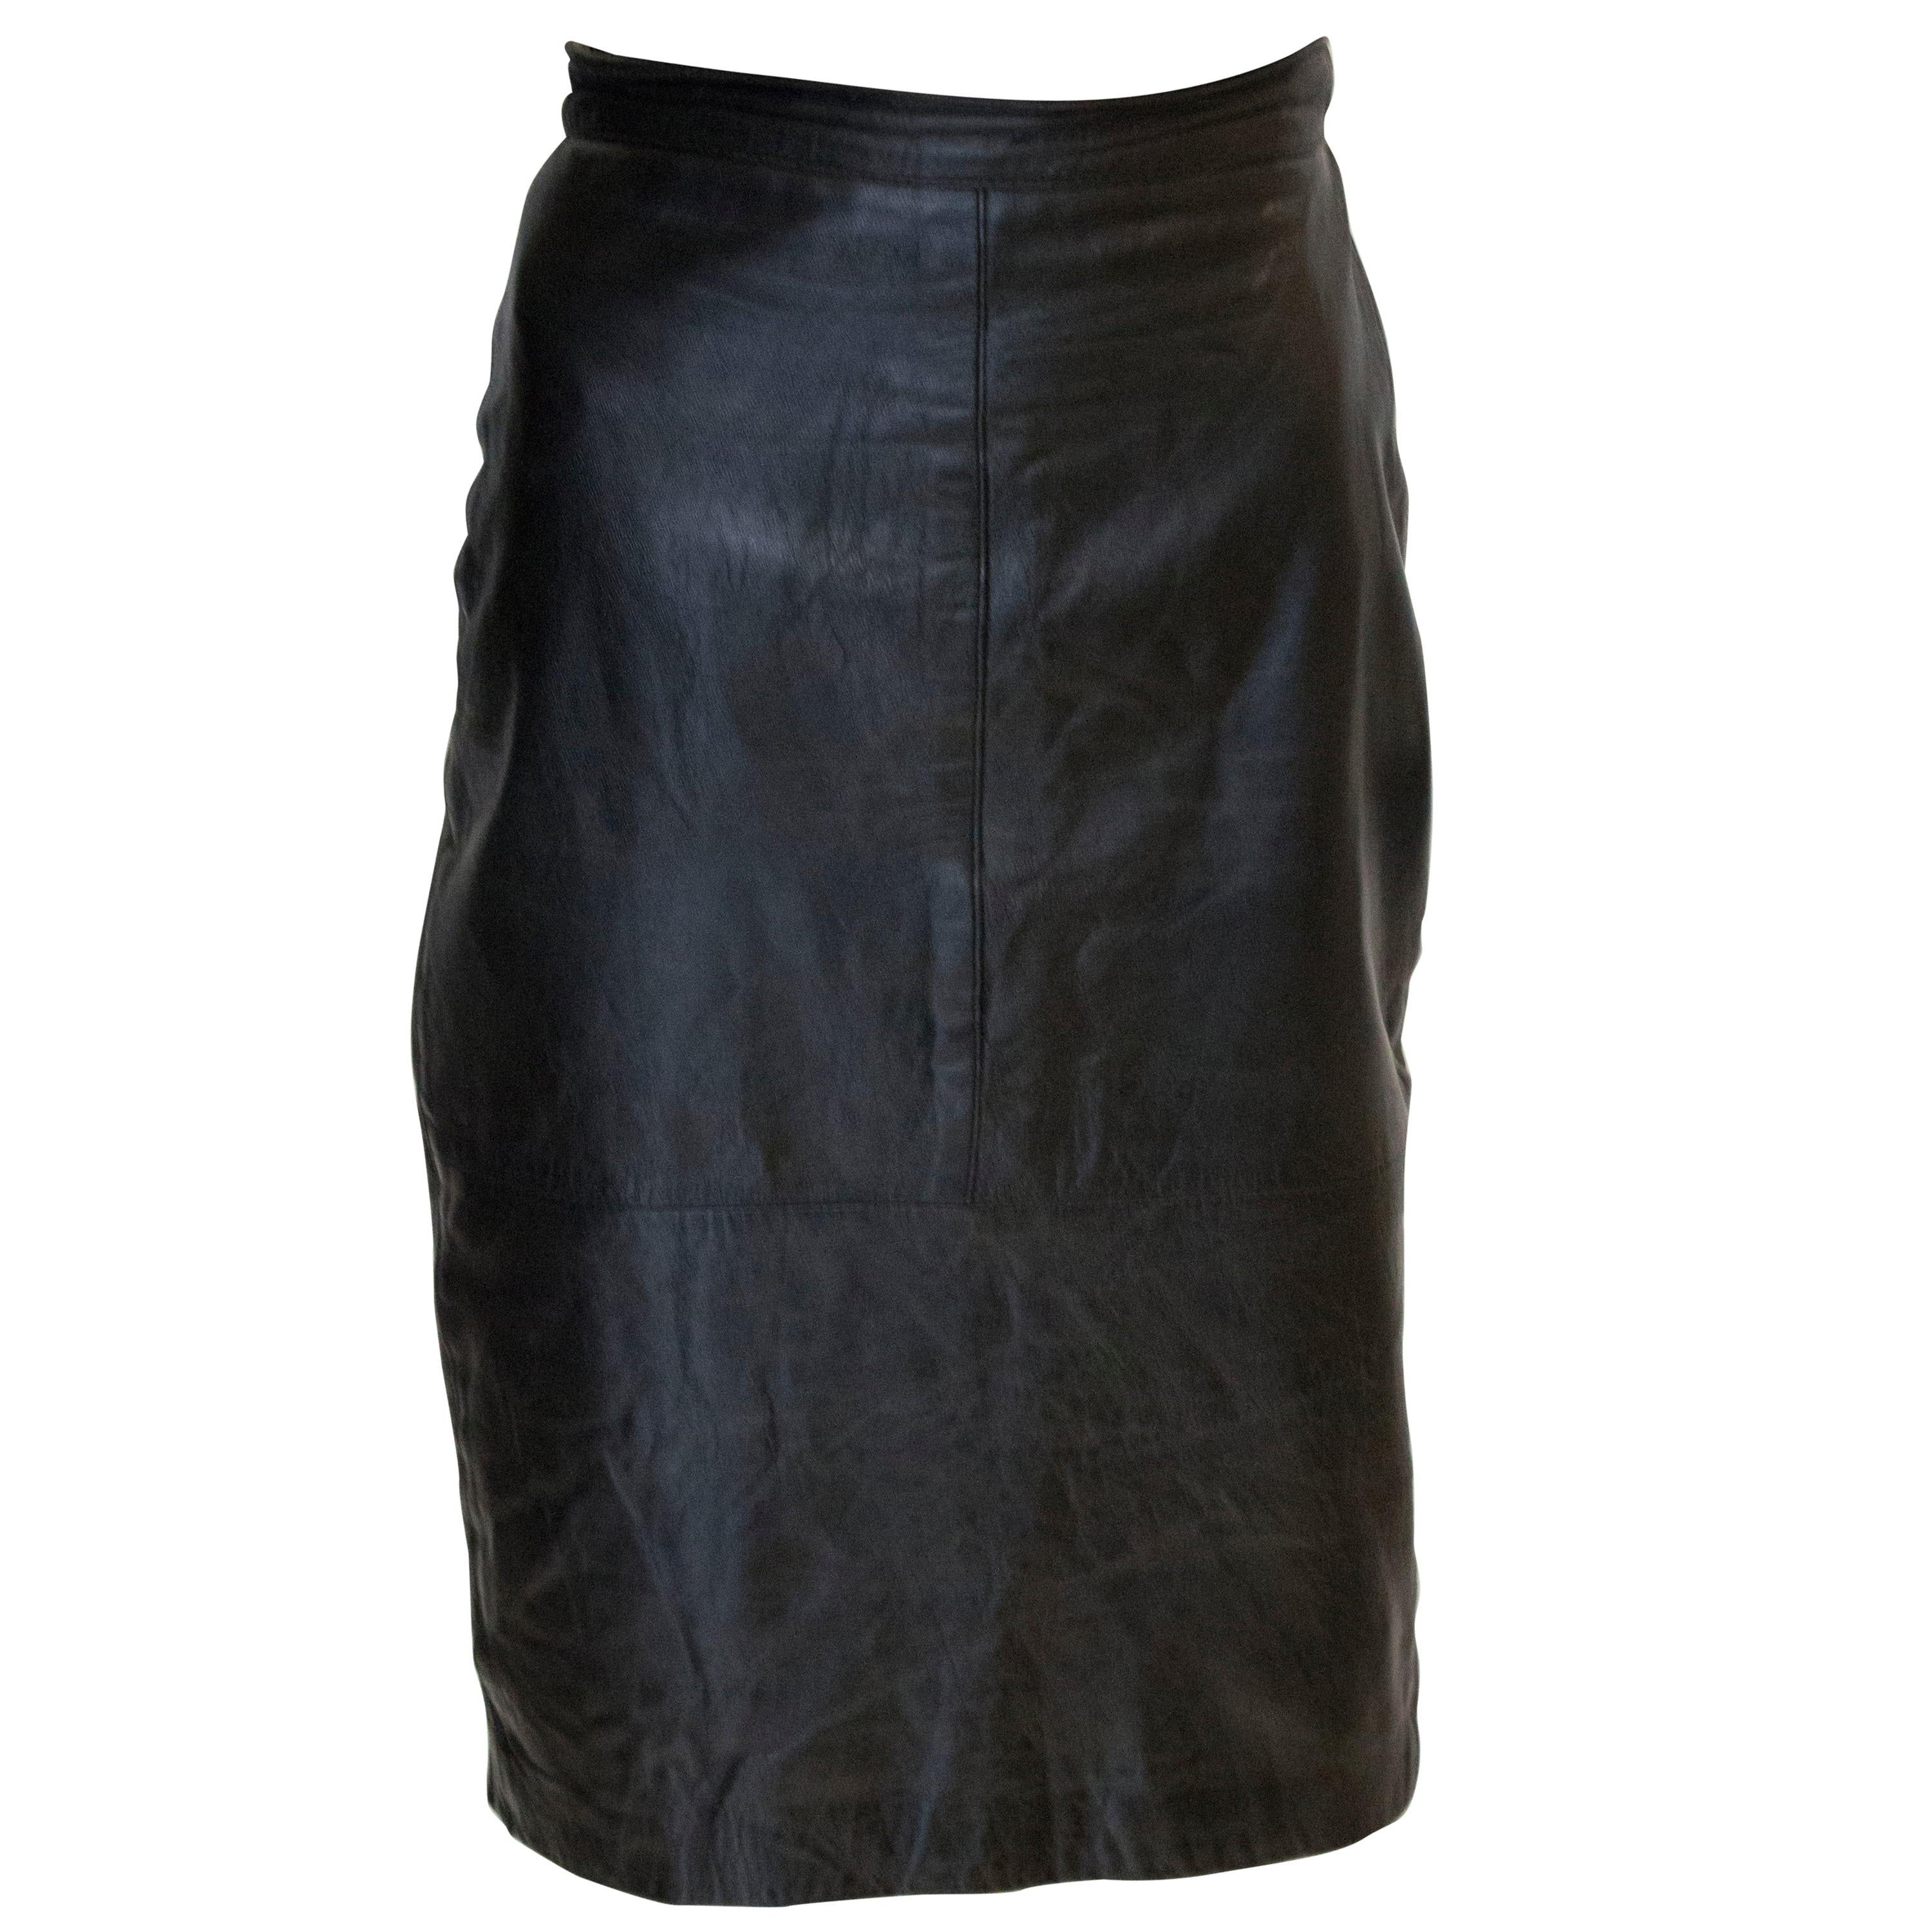 Vintage Black Leather Skirt For Sale